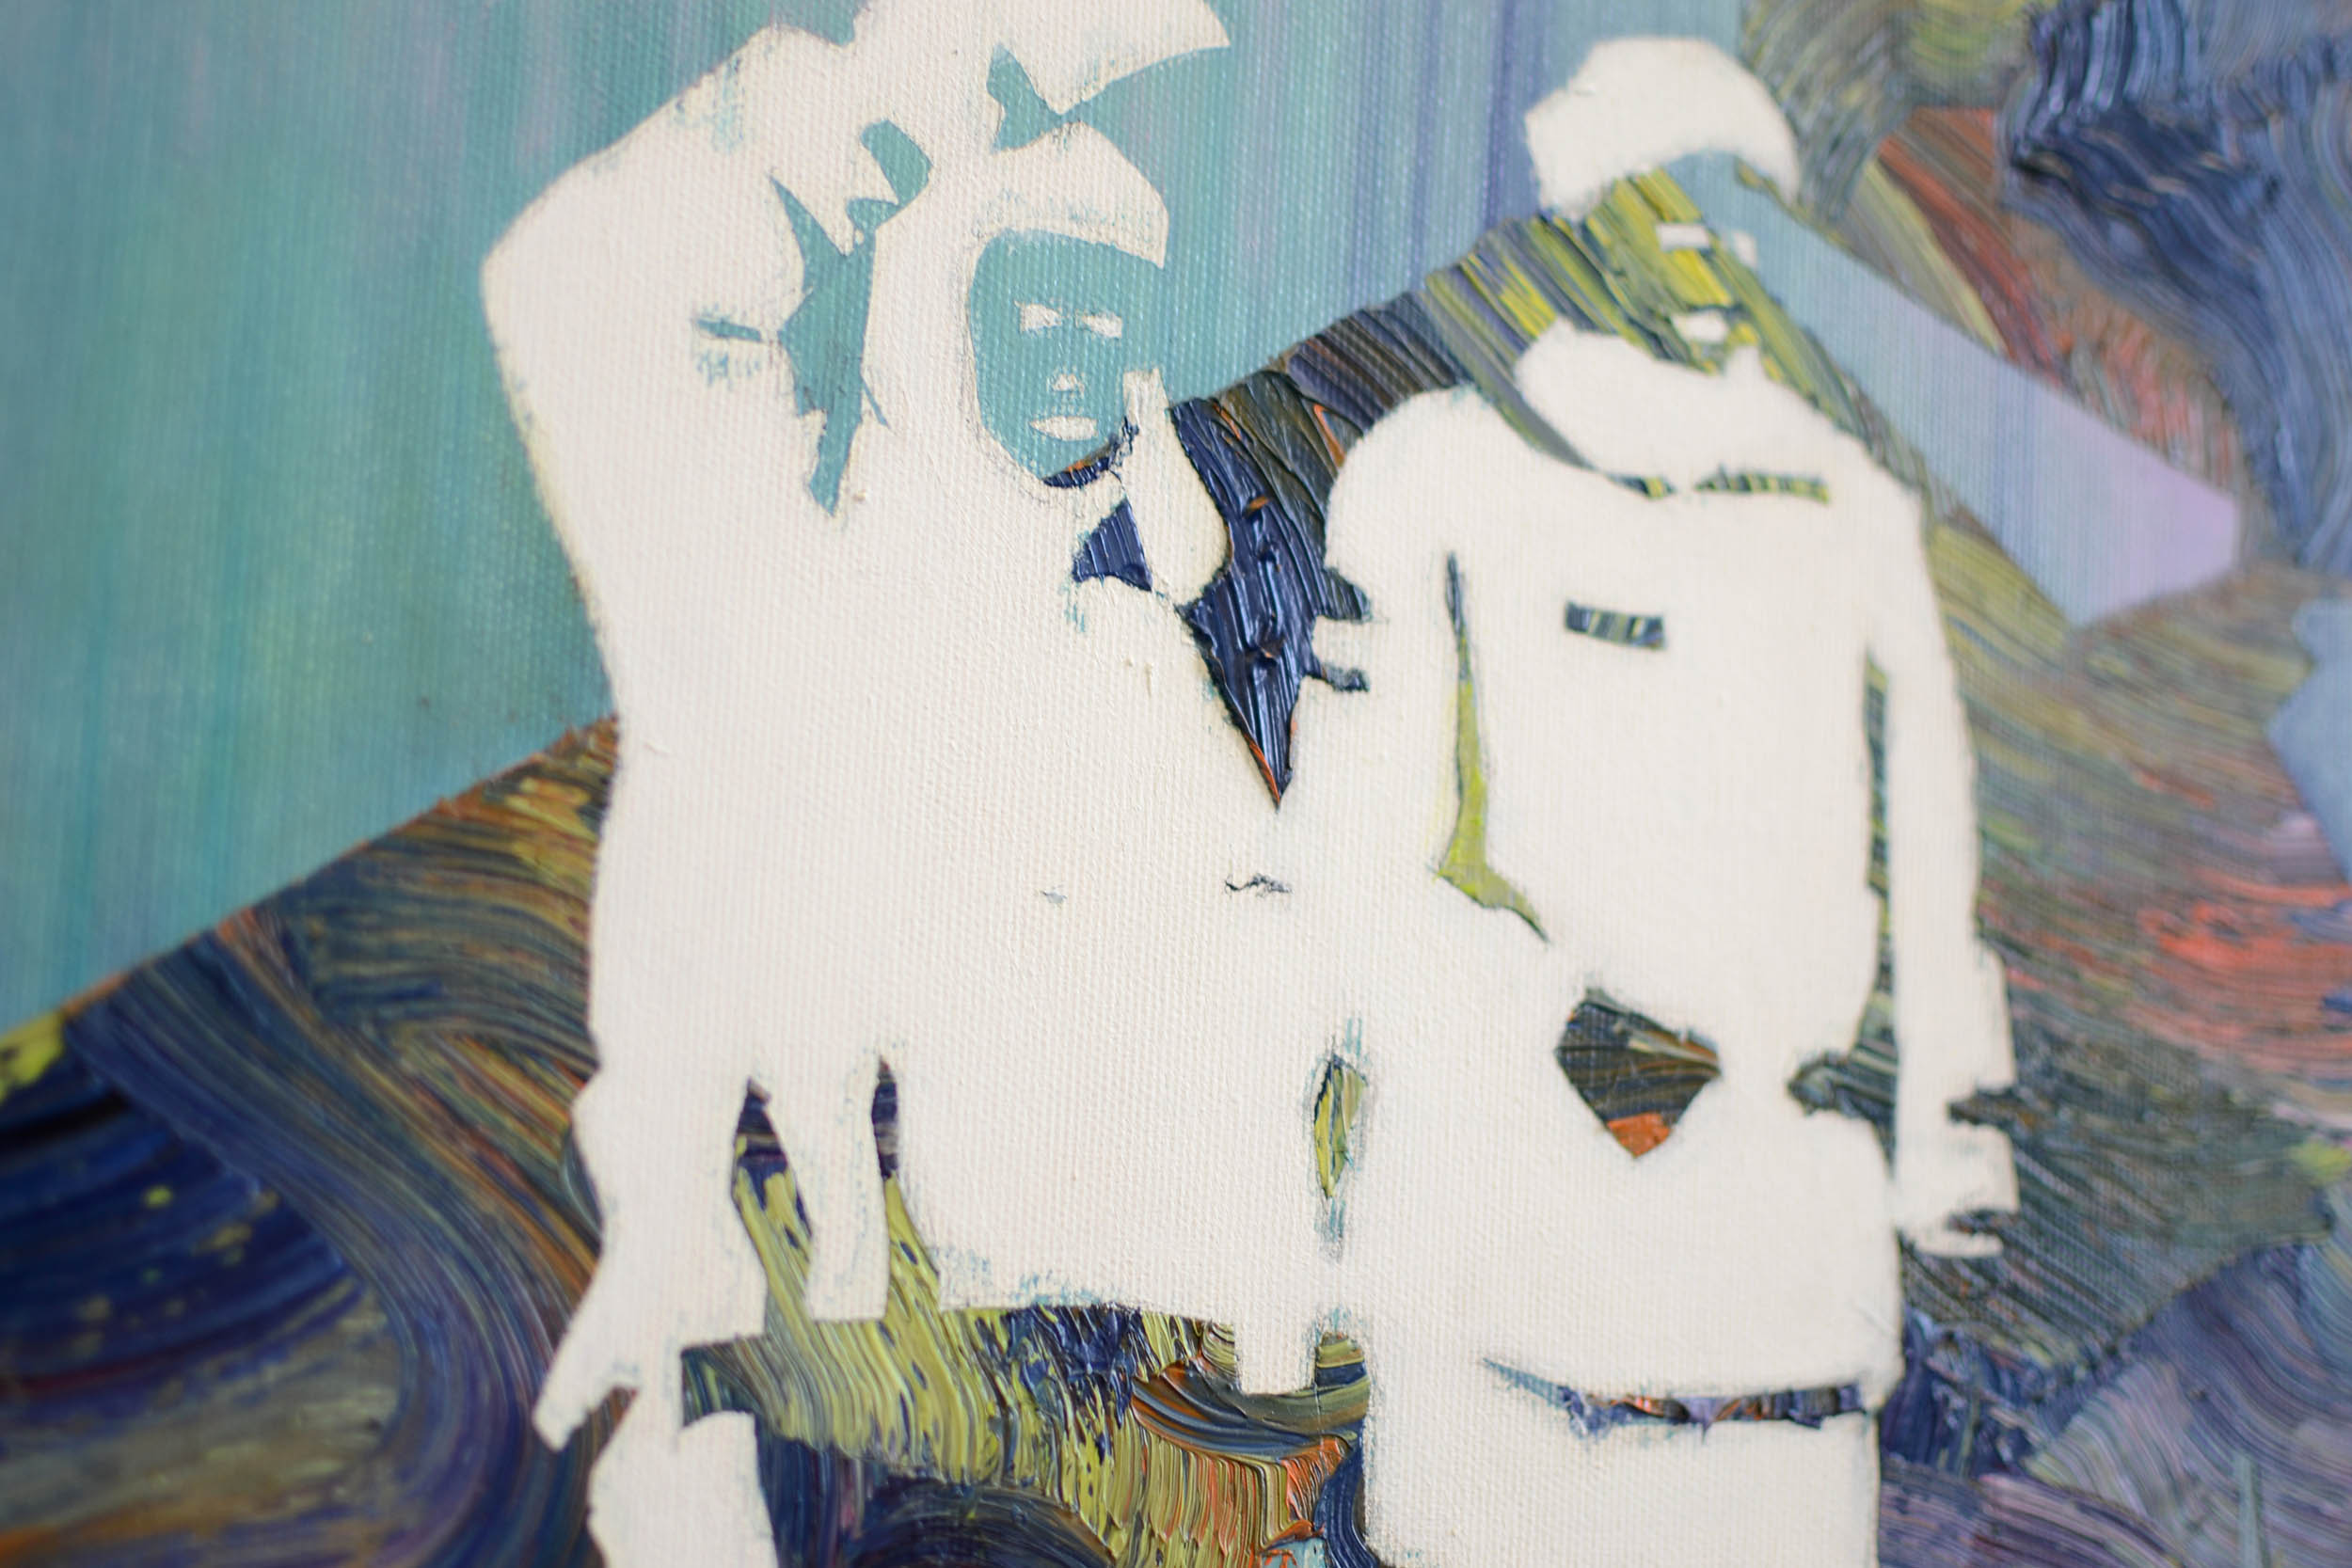   Am Limit (Detail)  oil on canvas 150 x 120 cm, 2014 